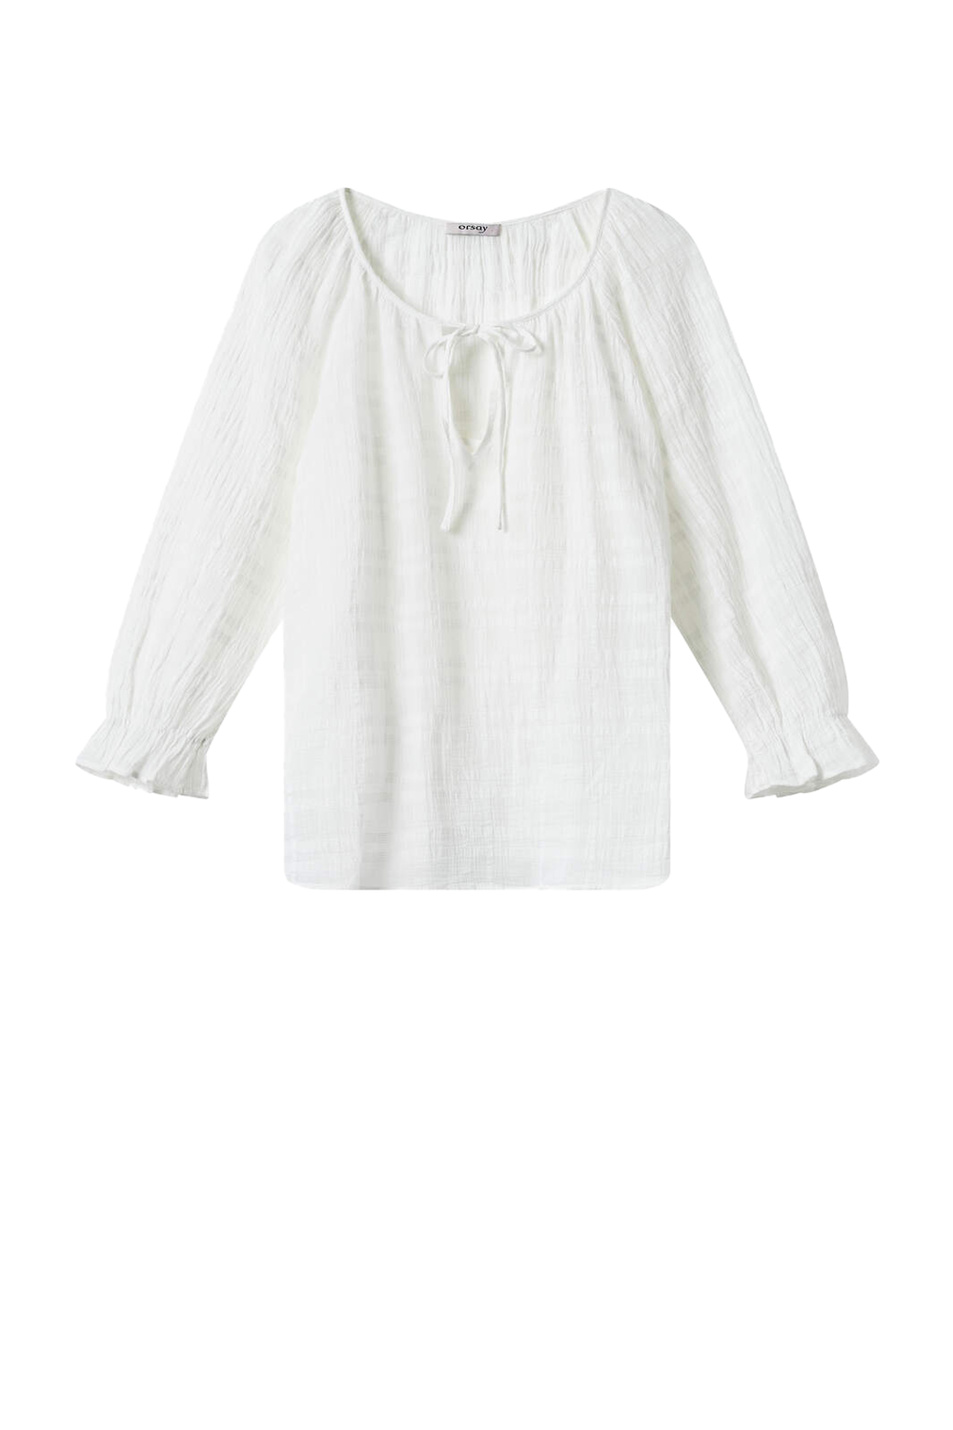 Orsay Блуза с рюшами на рукавах (цвет ), артикул 630034 | Фото 1